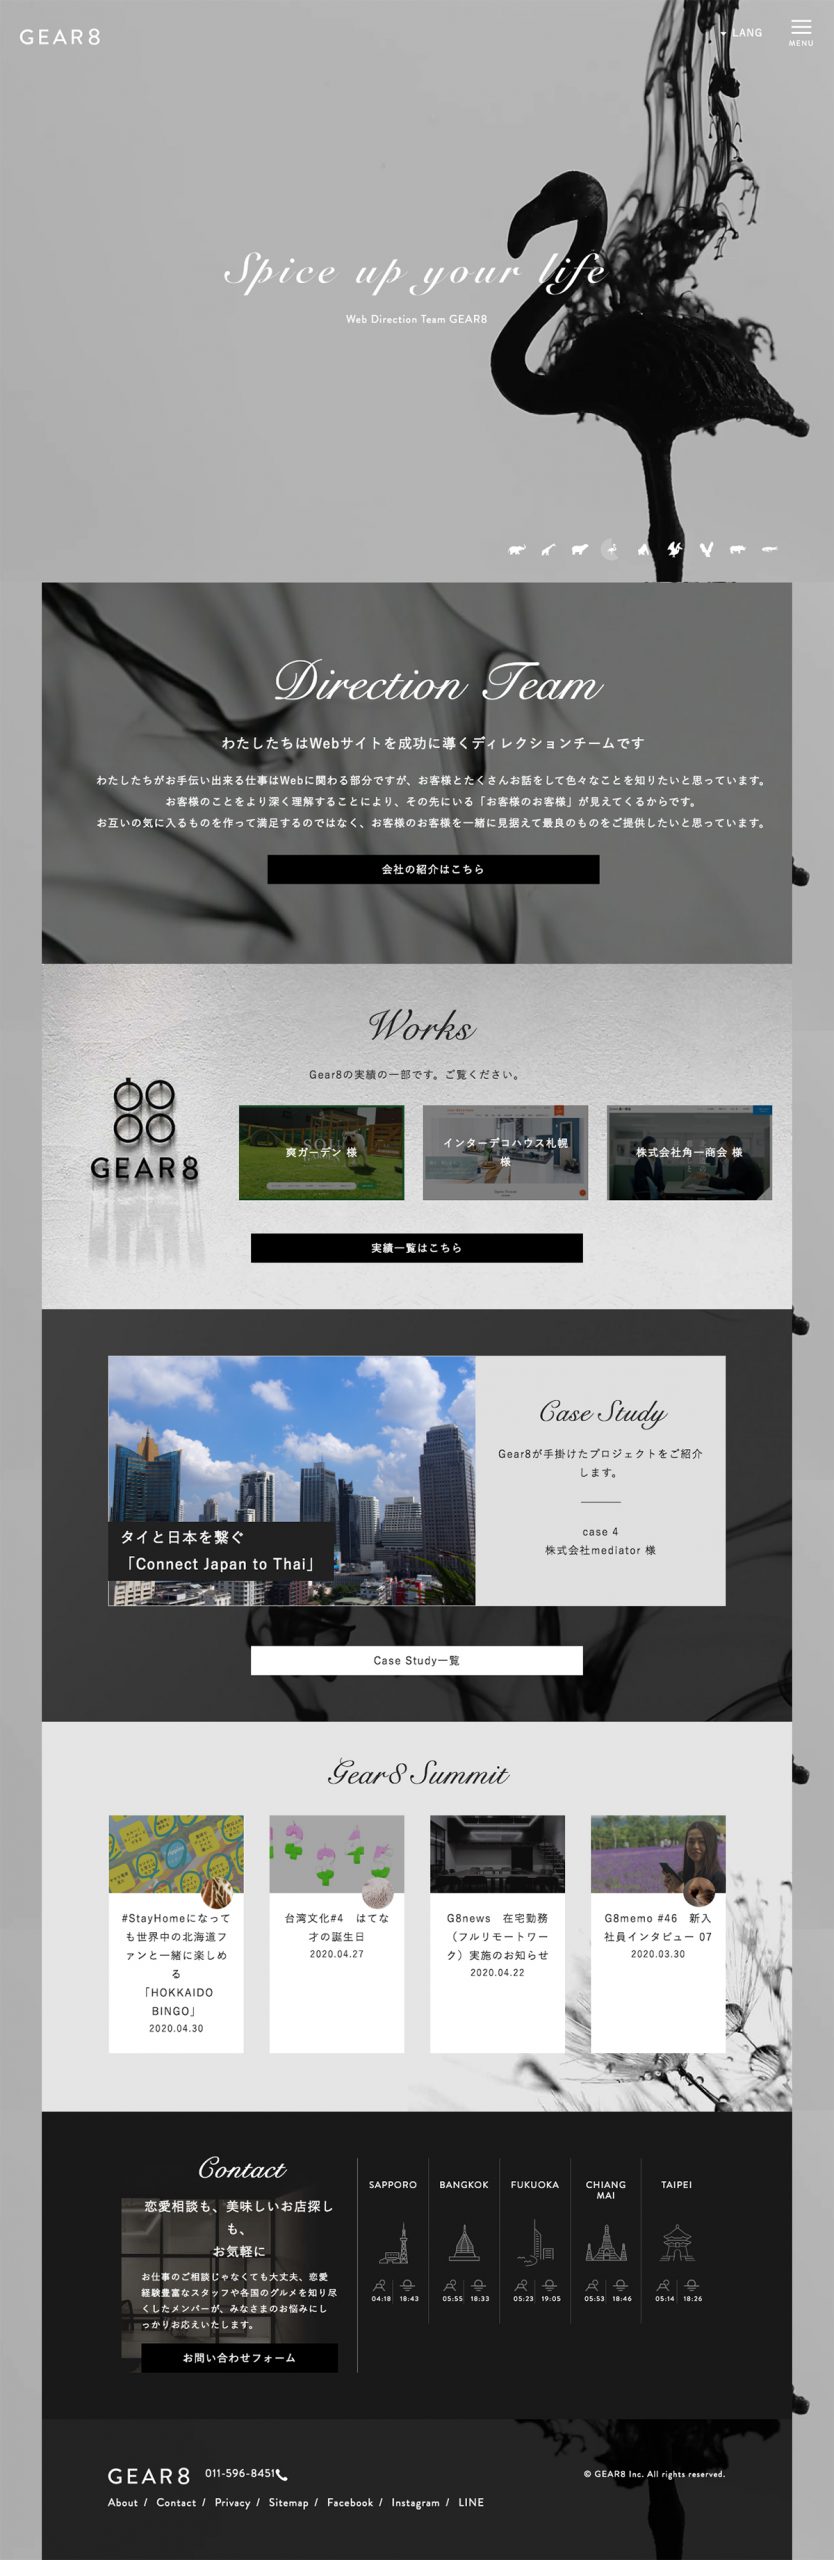 デザイン・制作会社・印刷 コーポレートサイト制作 WEBデザイン参考ギャラリー 株式会社GEAR8